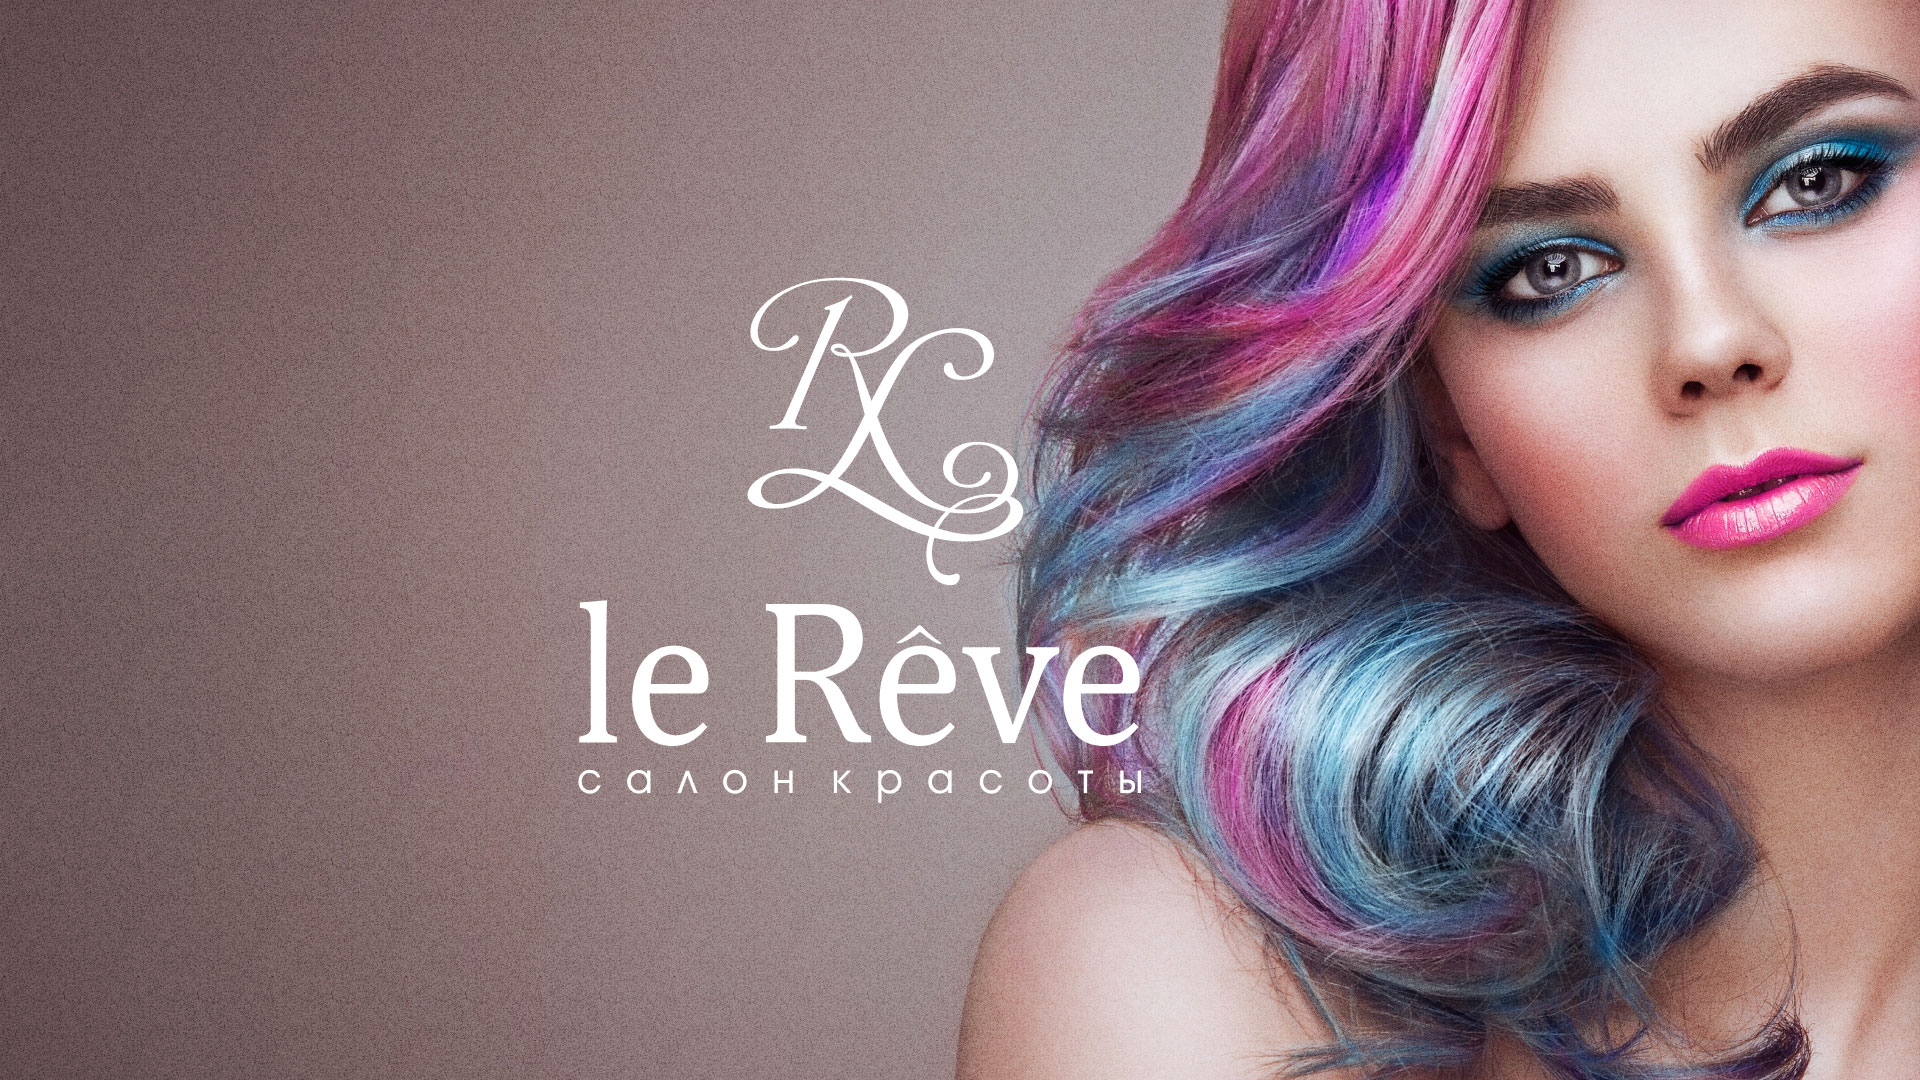 Создание сайта для салона красоты «Le Reve» в 